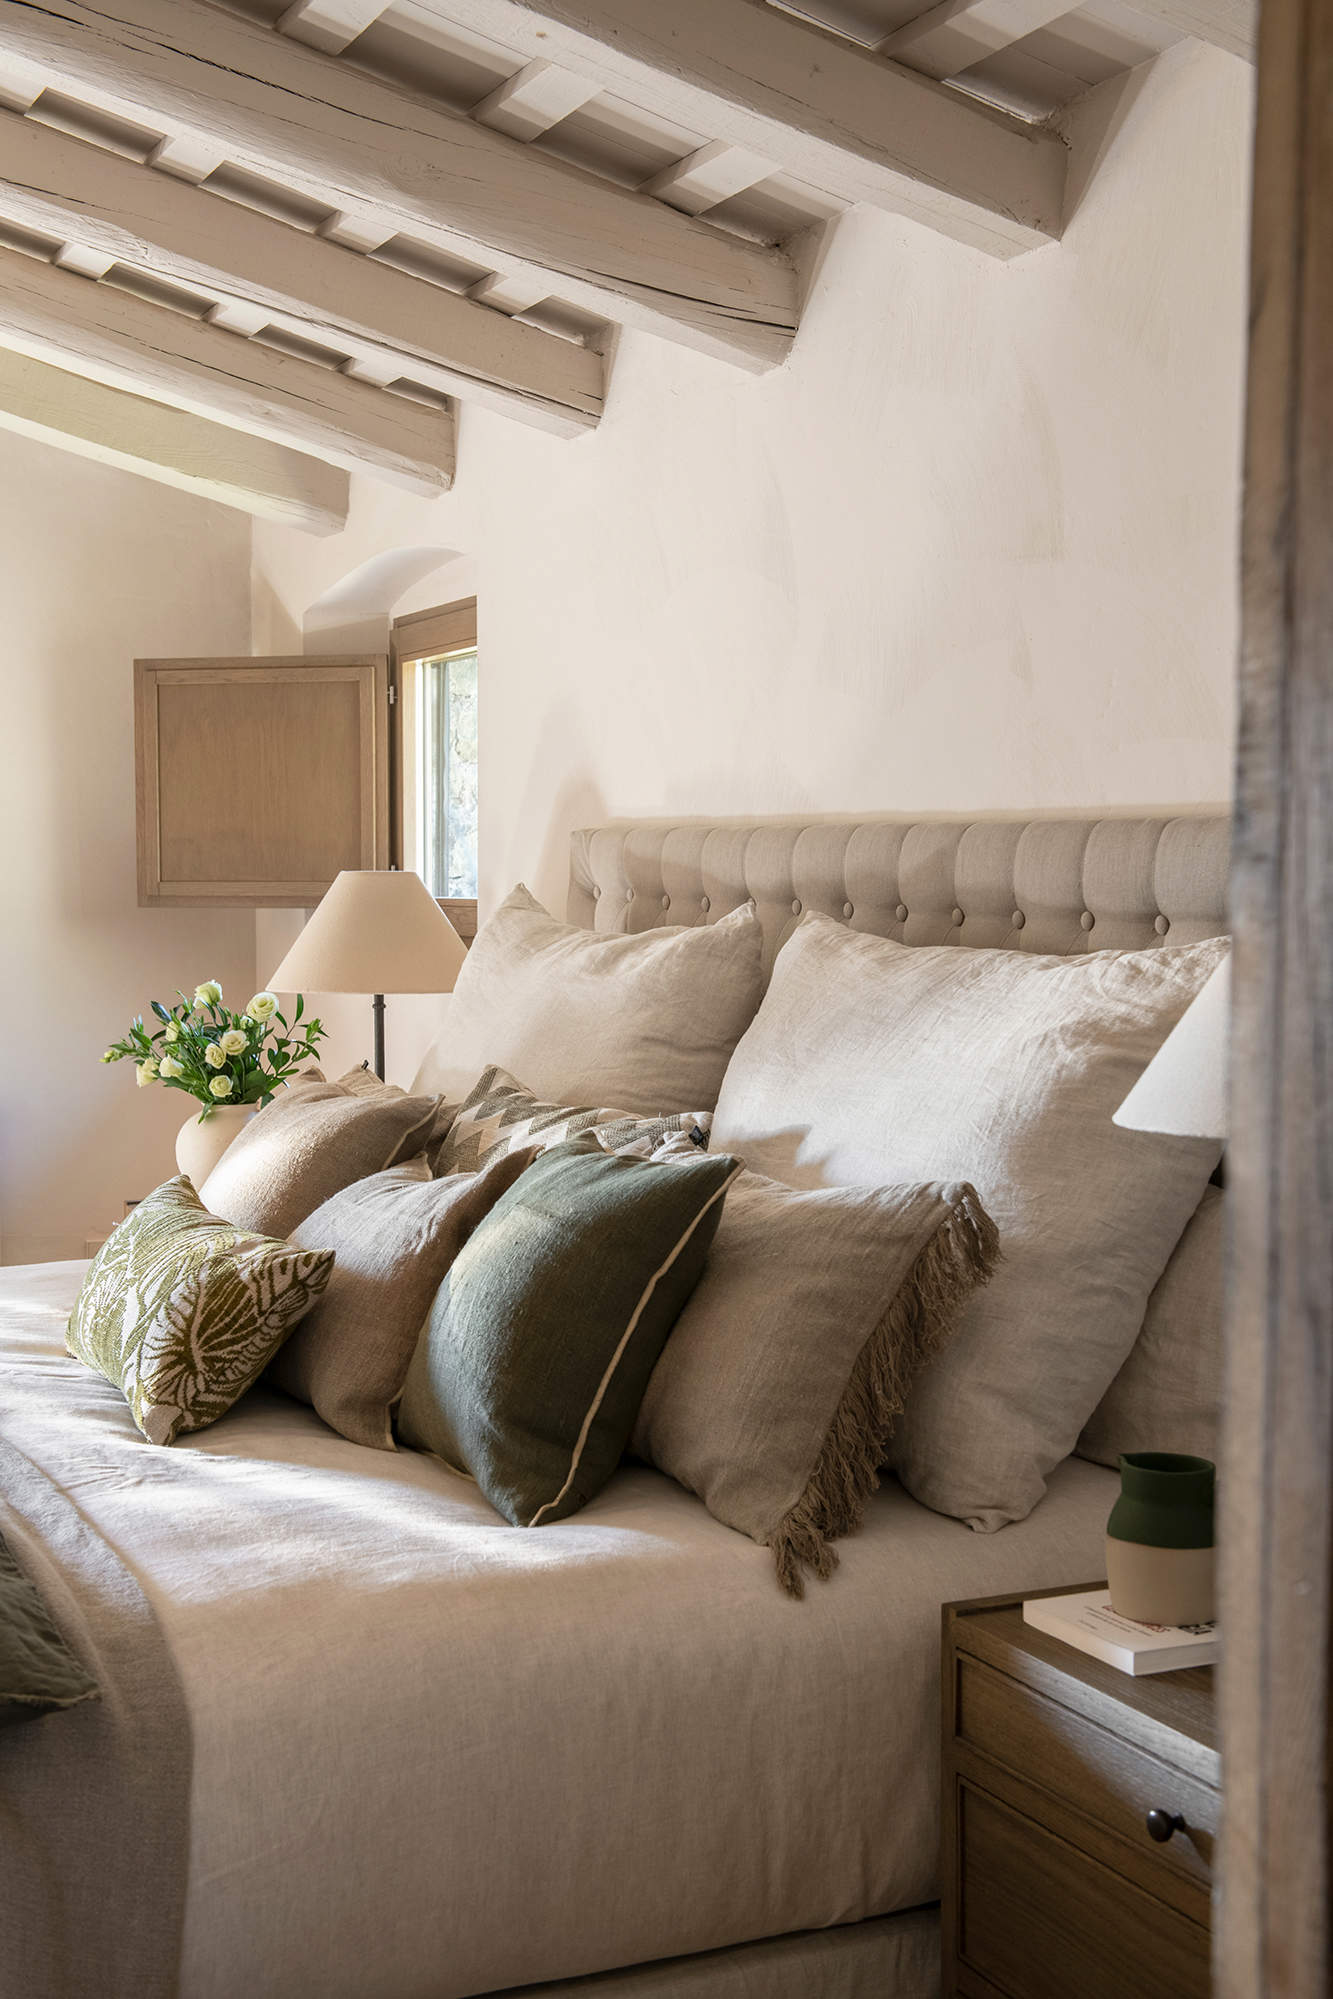 Dormitorio de estilo clásico con vigas de madera en el techo, pintadas en blanco.